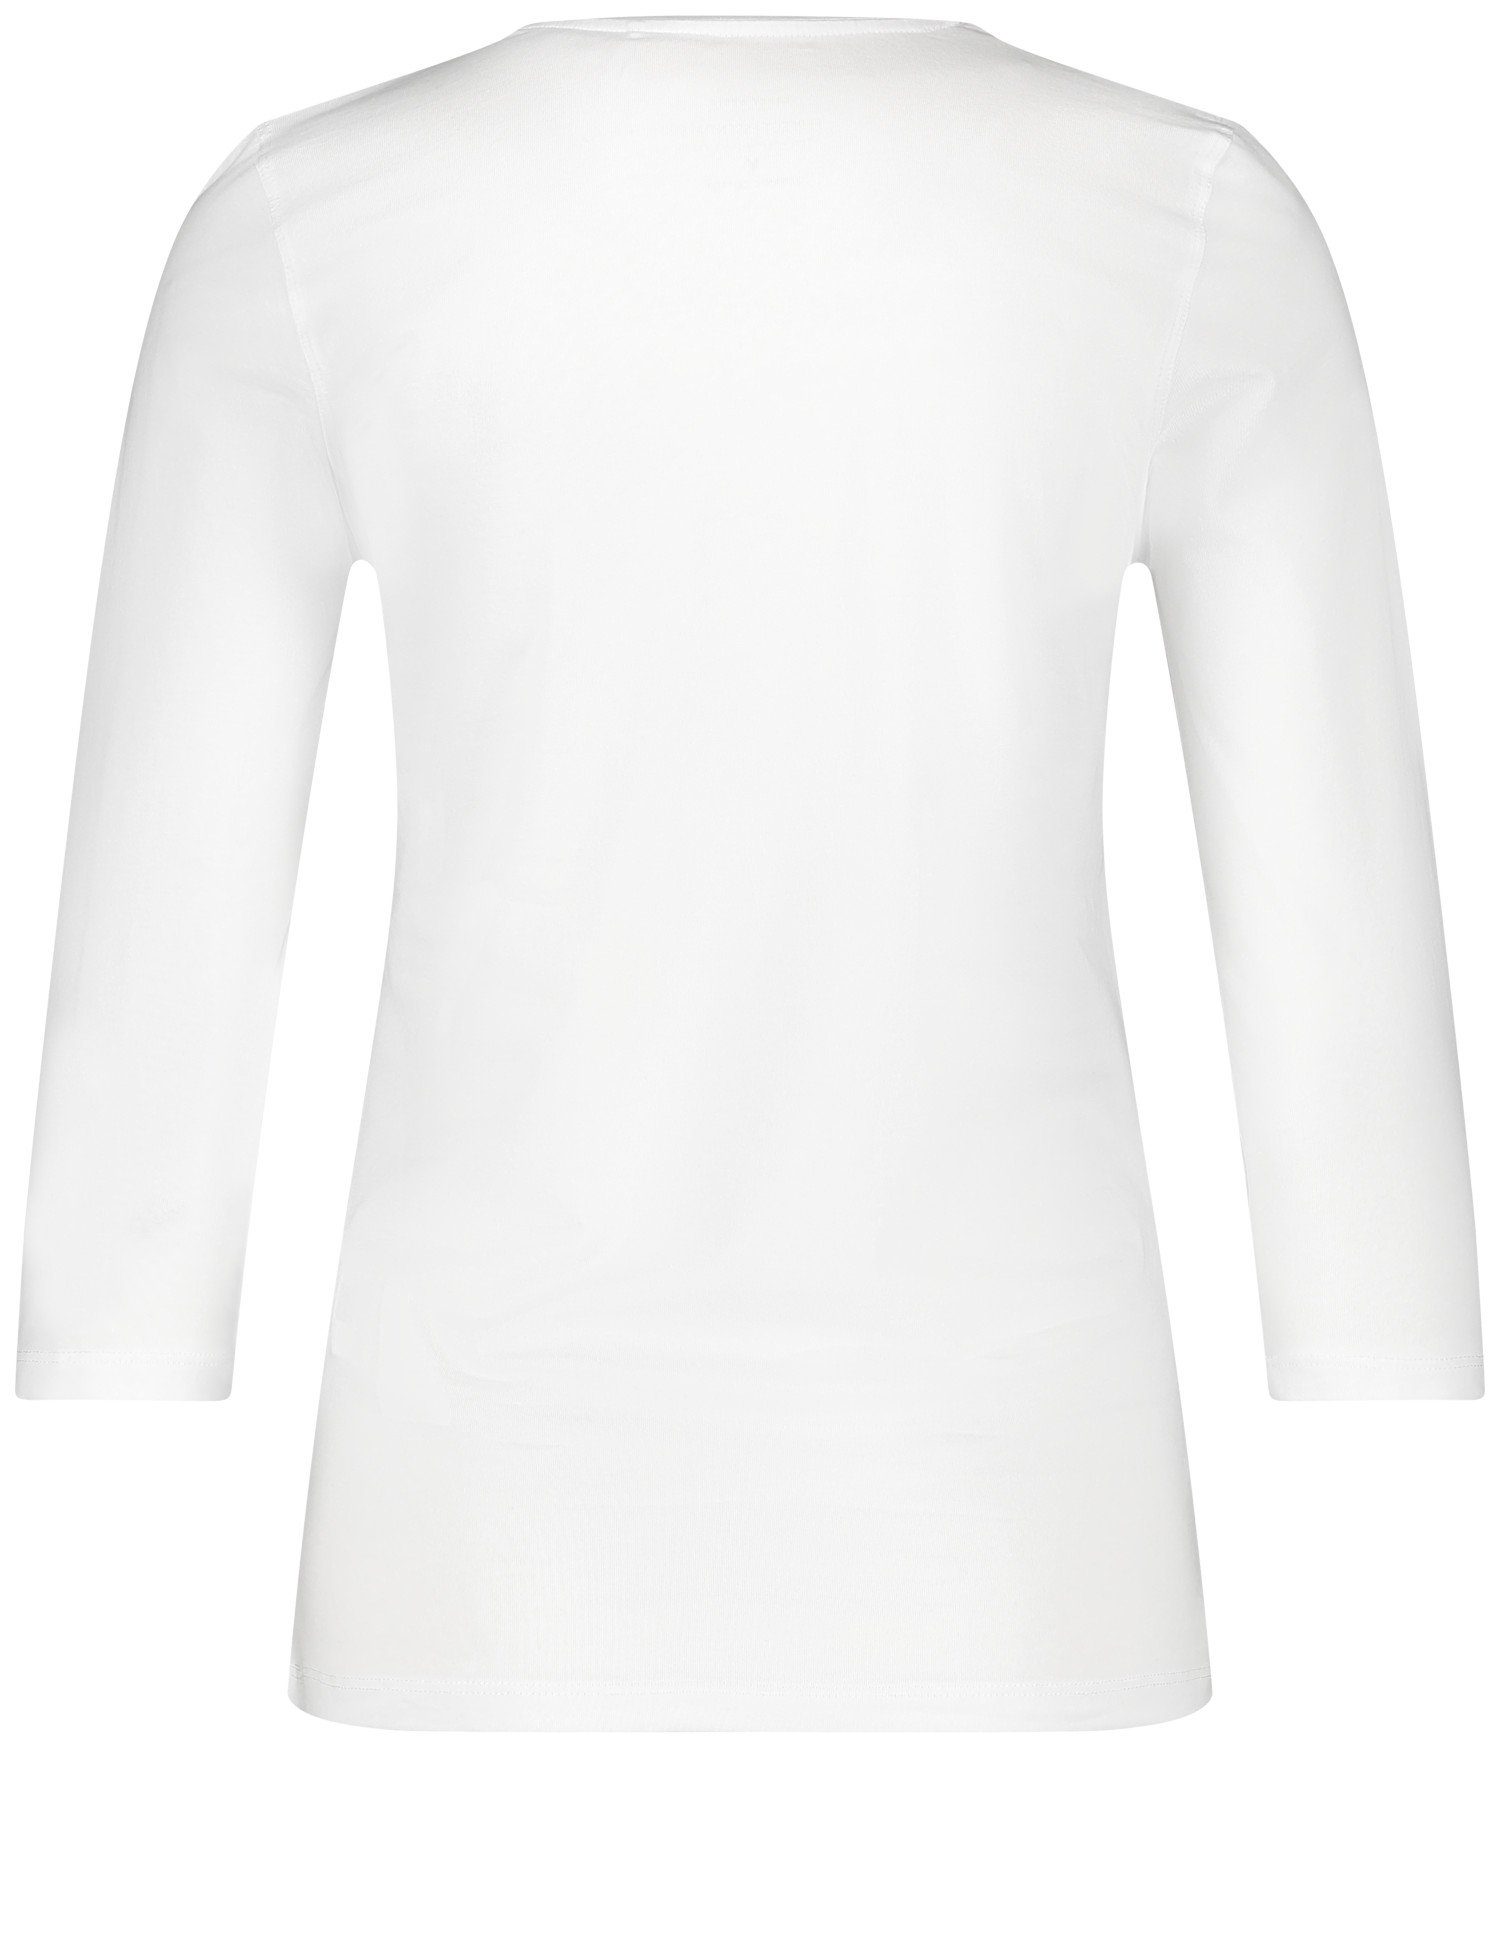 weiß/weiß 3/4 WEBER mit satinierter Shirt 3/4-Arm-Shirt Arm GERRY Ausschnittblende